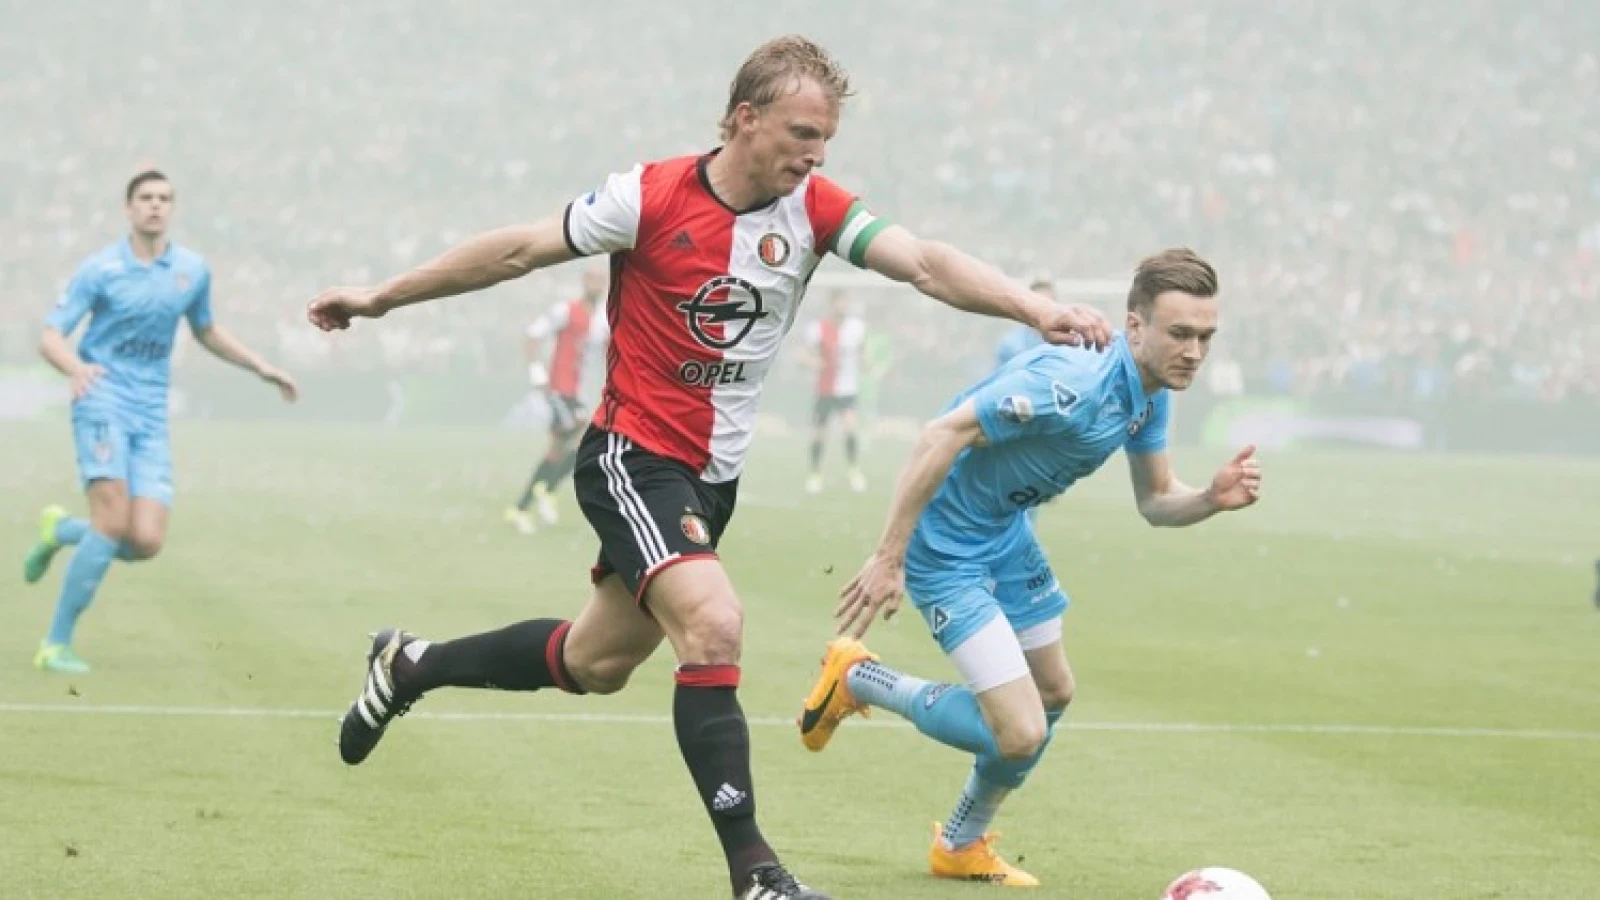 LIVE | Feyenoord - Heracles Almelo 3-0 | Einde wedstrijd